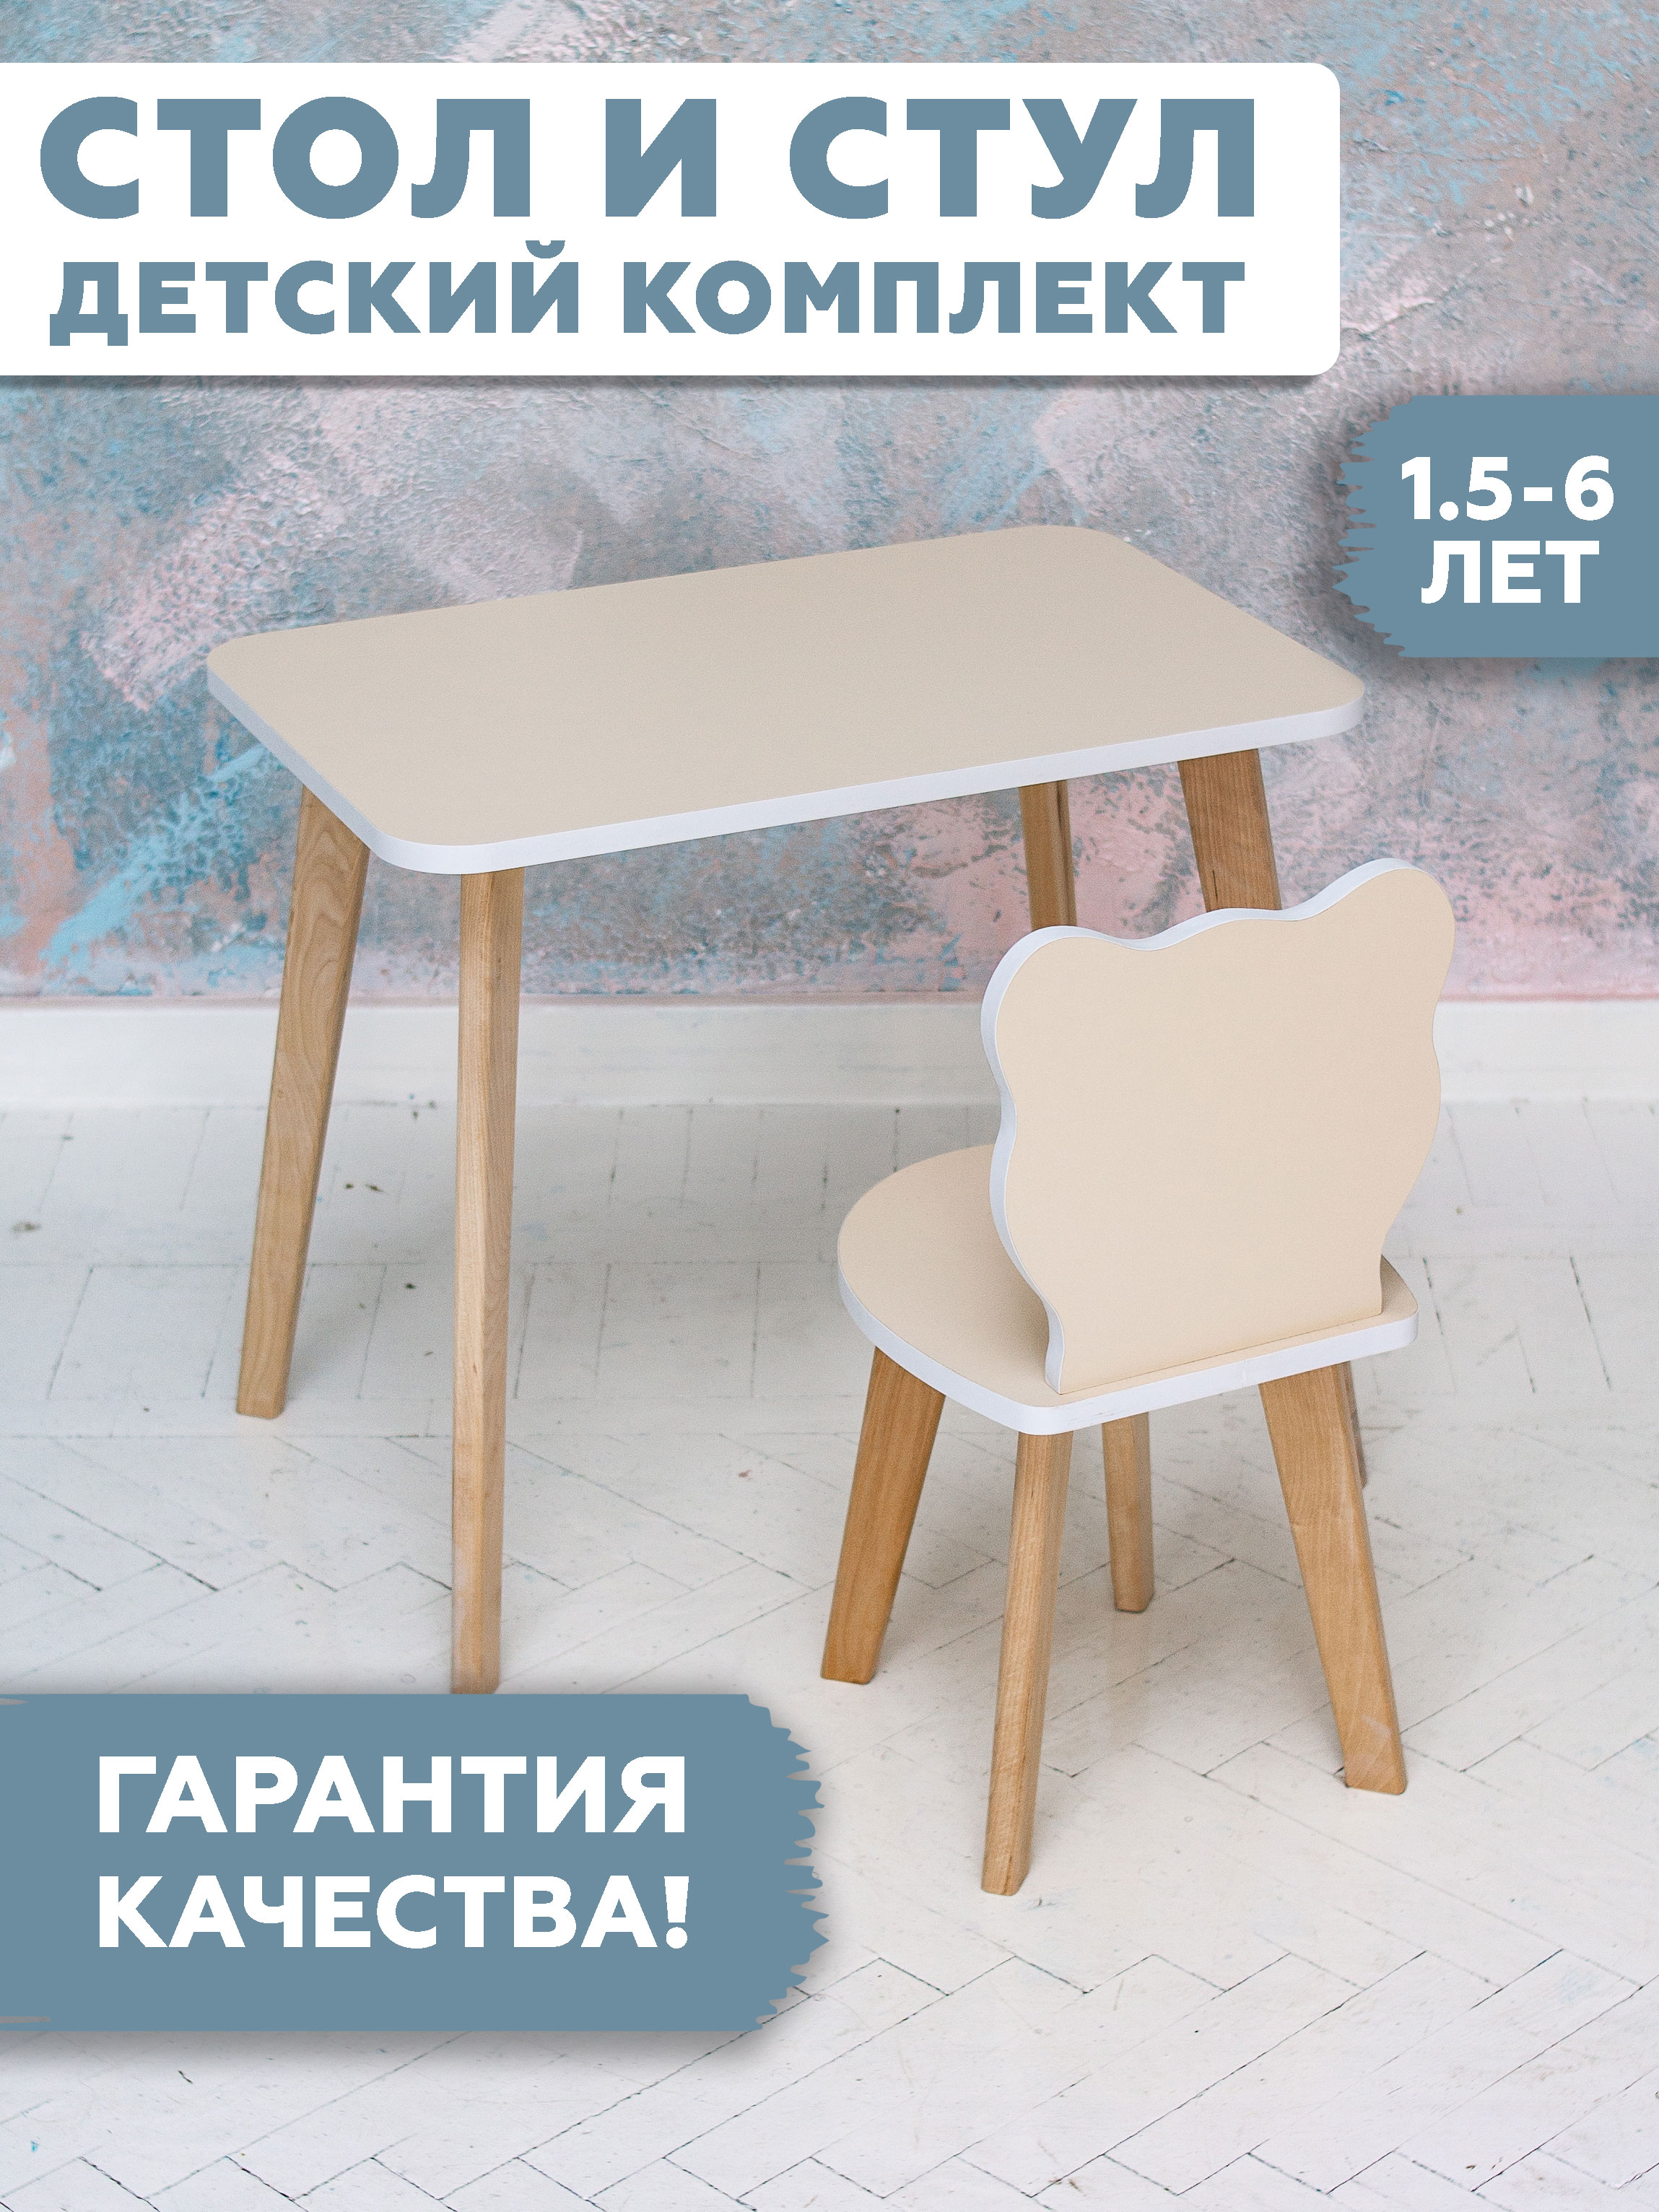 Комплект детской мебели RuLes столик и стульчик мишка бежевый стандарт